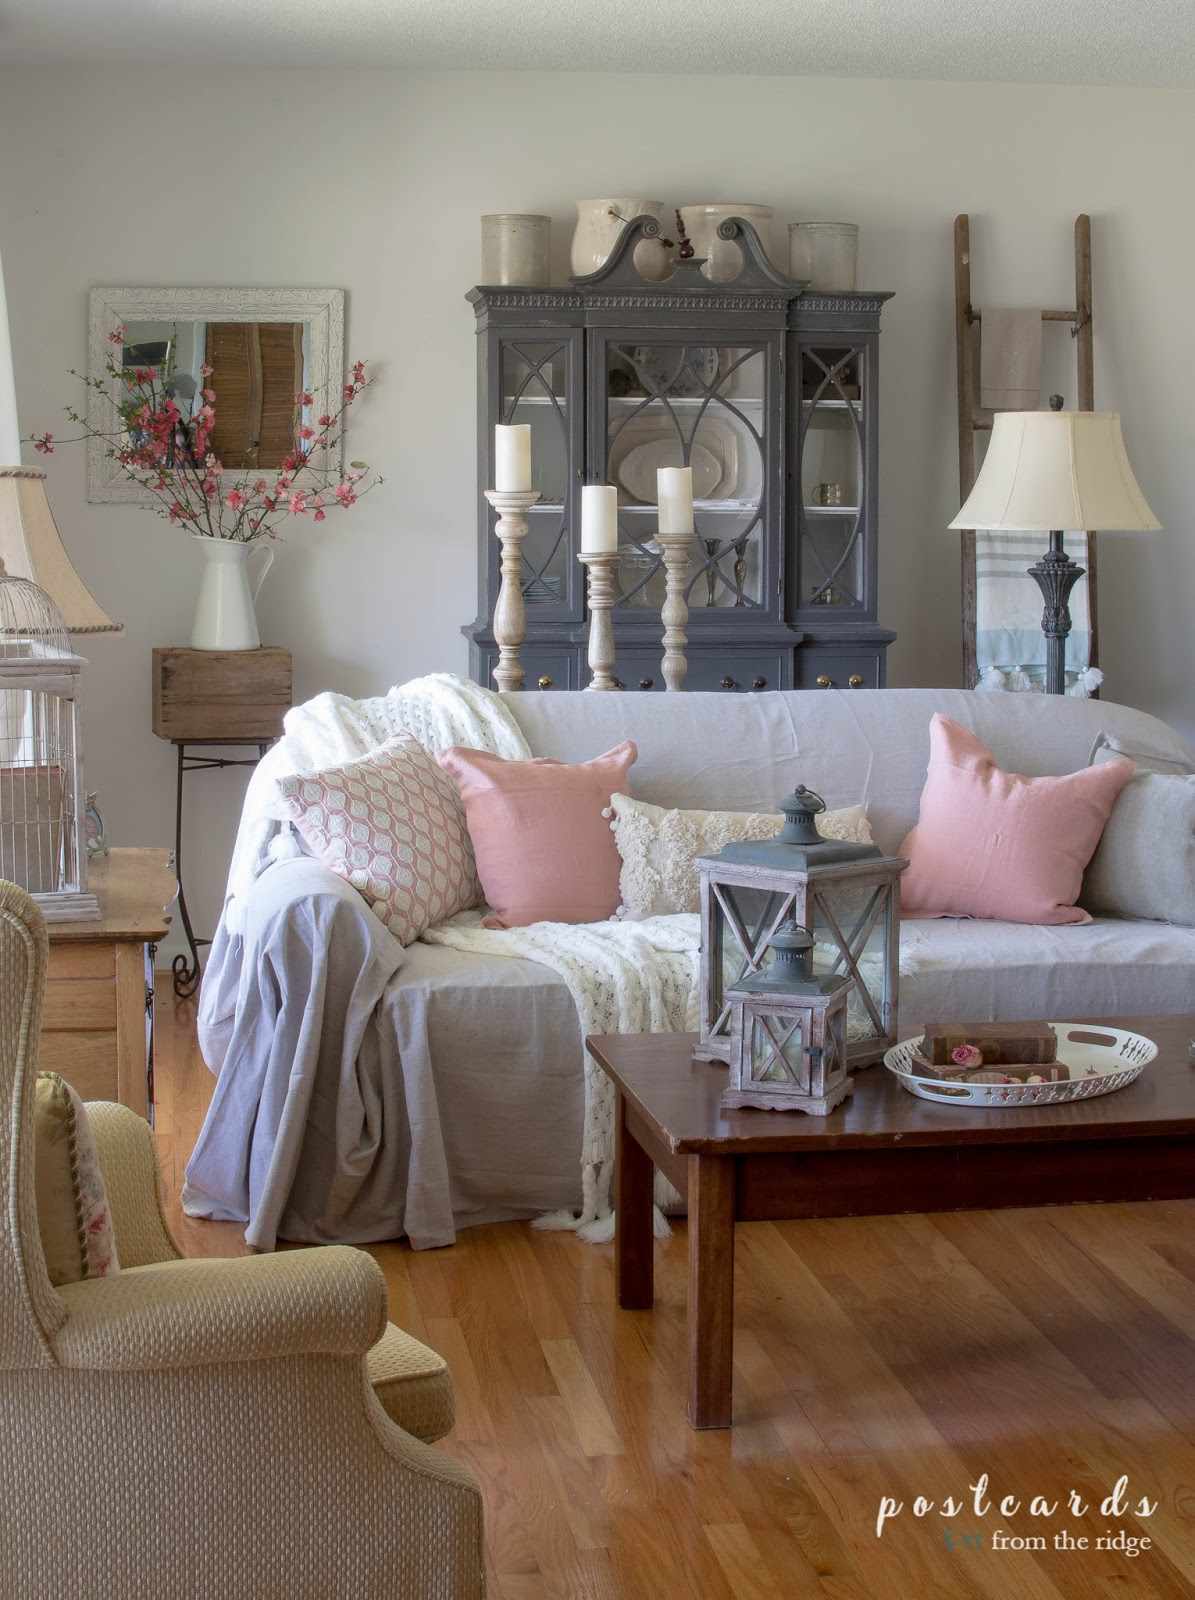 Ein graues Sofa mit Kissen darauf in einem Wohnzimmer mit viel Dekor.